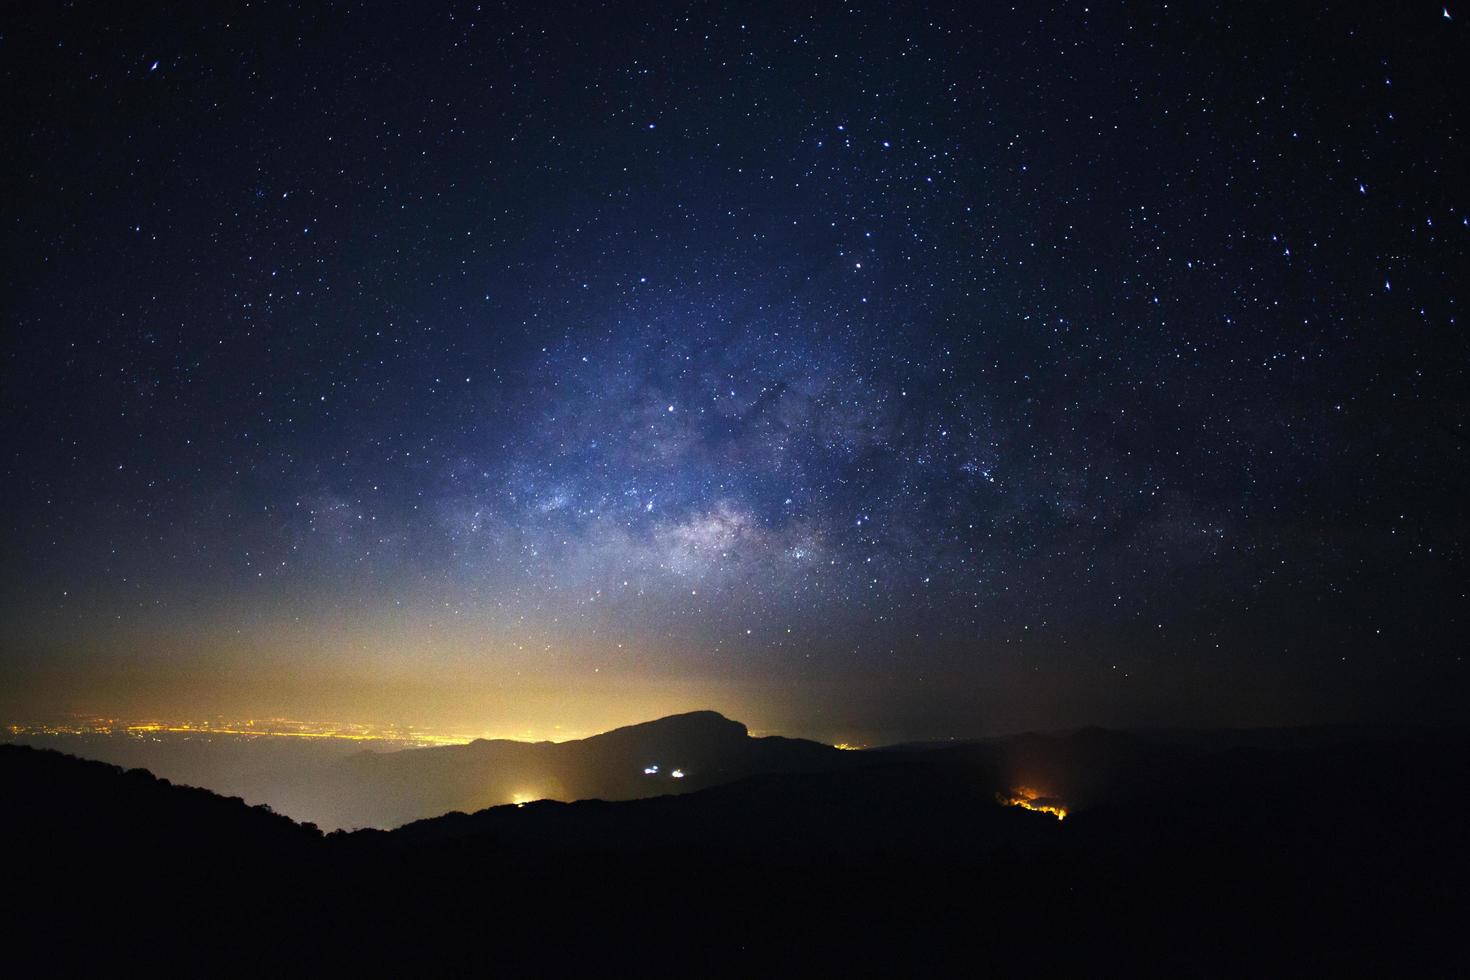 mjölkig sätt galax med ljus stad på doi Inthanon chiang maj, thailand.lång exponering fotografi.med spannmål foto